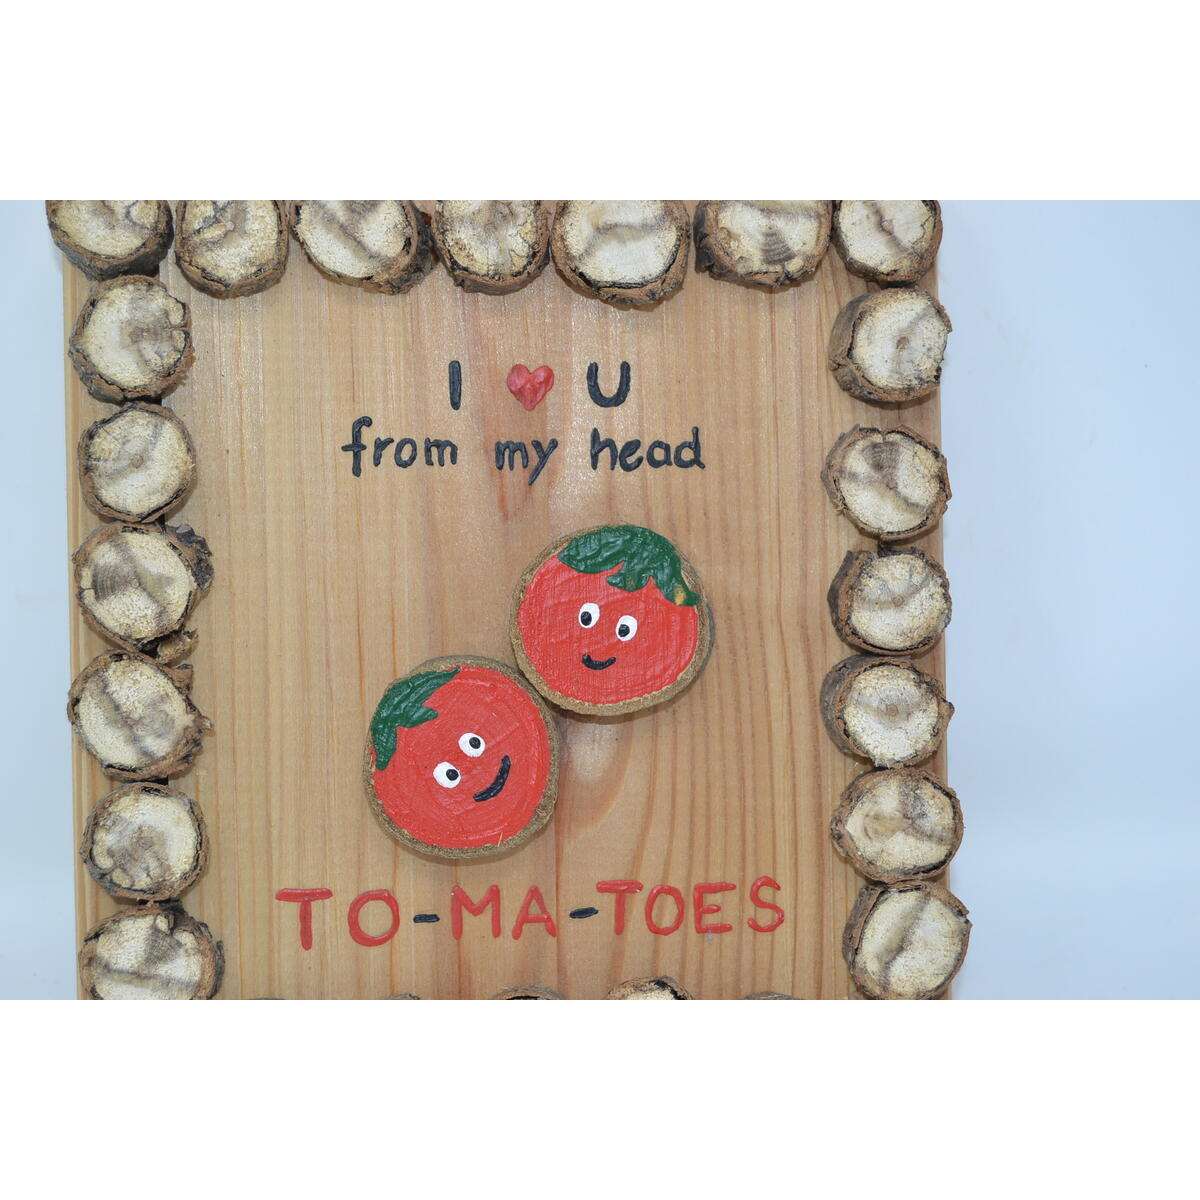 Holzbild "Tomatoes" aus Baumscheiben